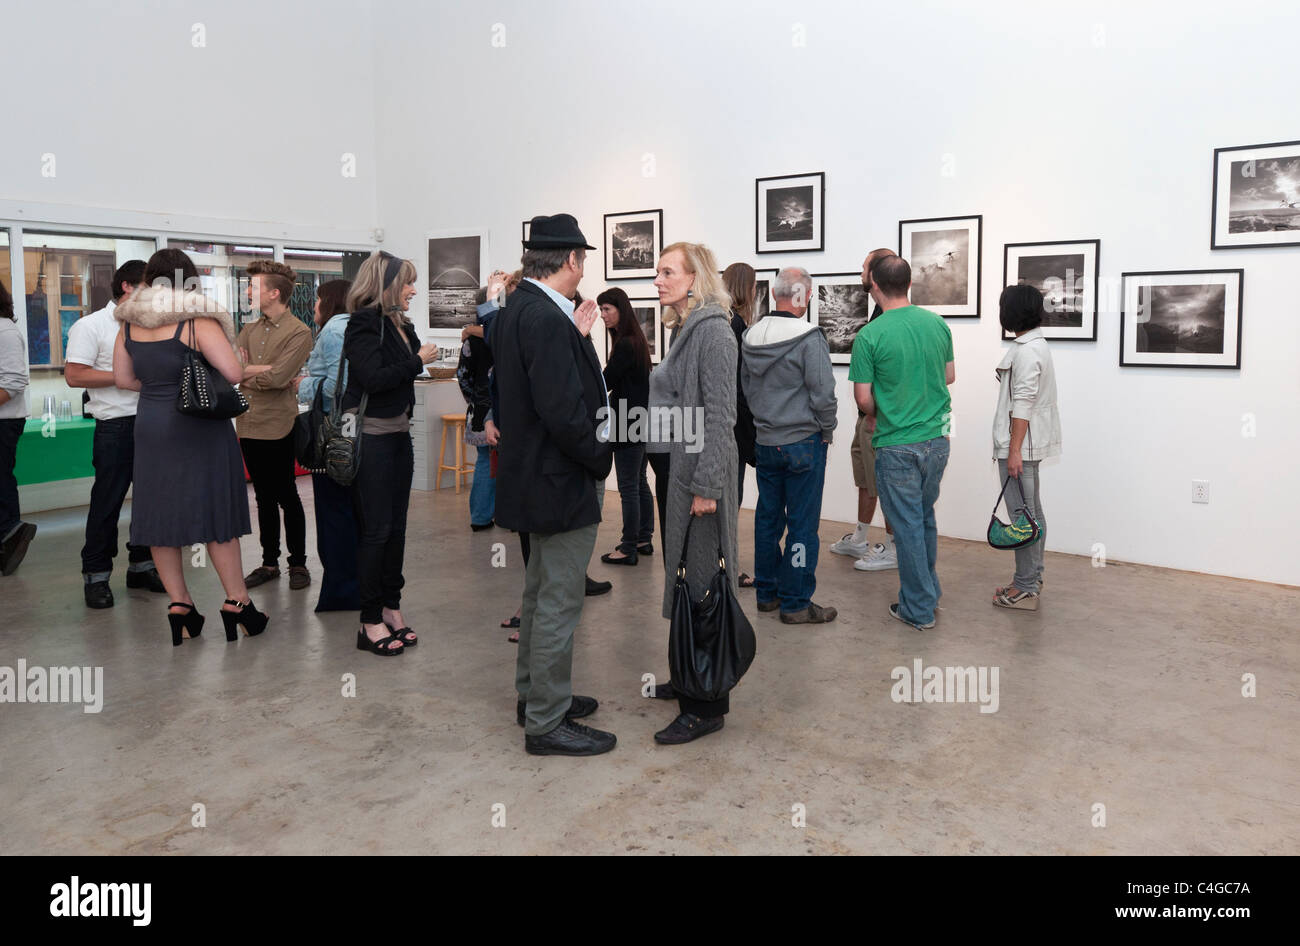 Ed Freeman Photography Gallery ouverture de sa nouvelle exposition, 31 jours. Banque D'Images